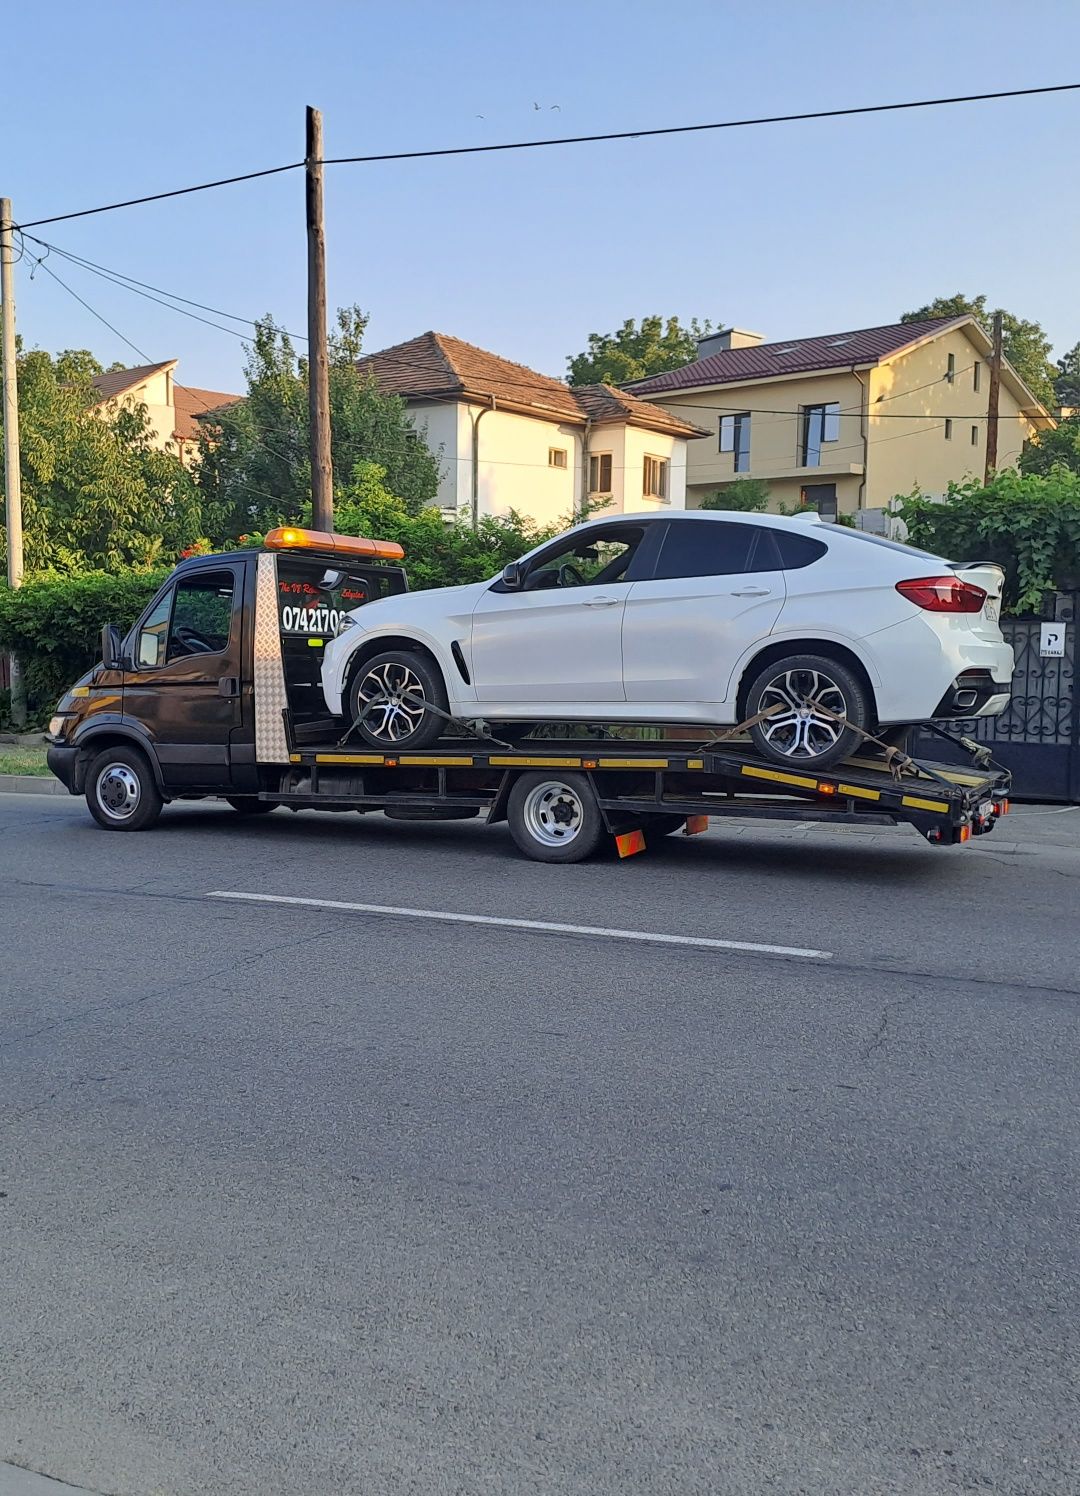 Tractari auto în Craiova și în țară. Transport la RAR-ITP-REMAT.